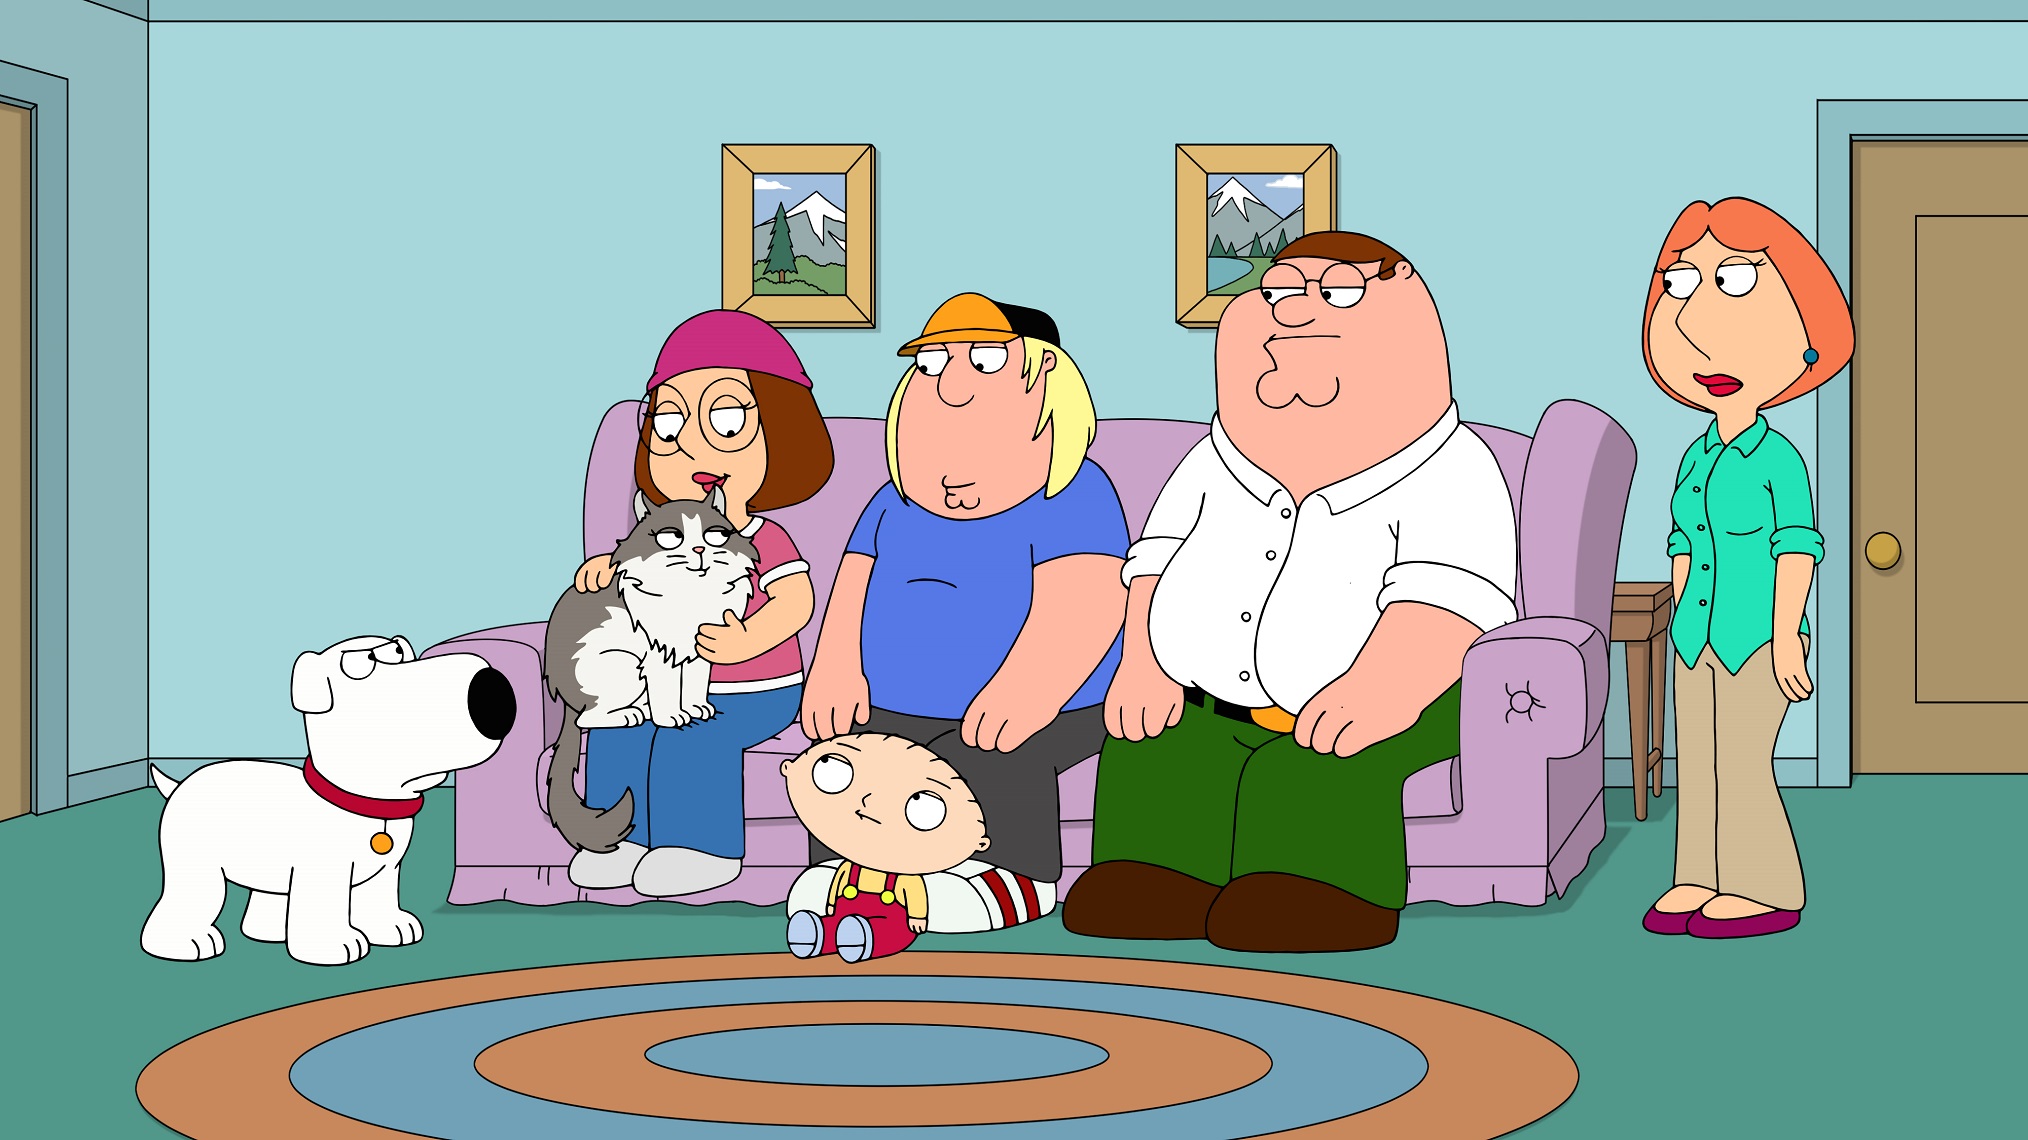 2 de agosto: “Family Guy” (temporada 20), Fox Comedy